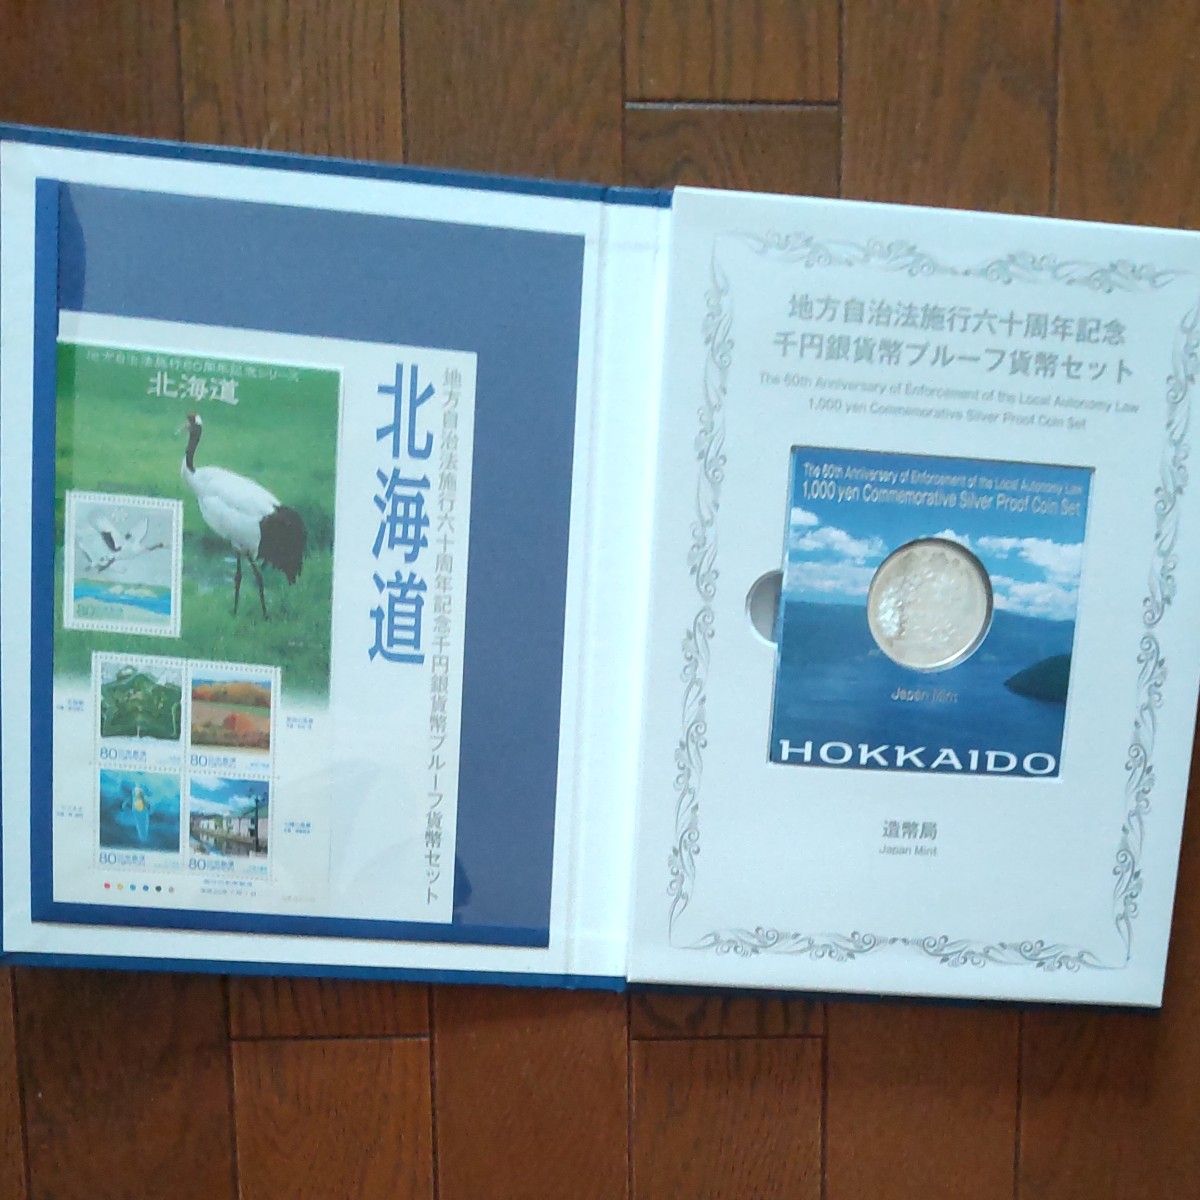 地方自治法施行六十周年記念 造幣局 北海道 千円銀貨幣プルーフ貨幣セット